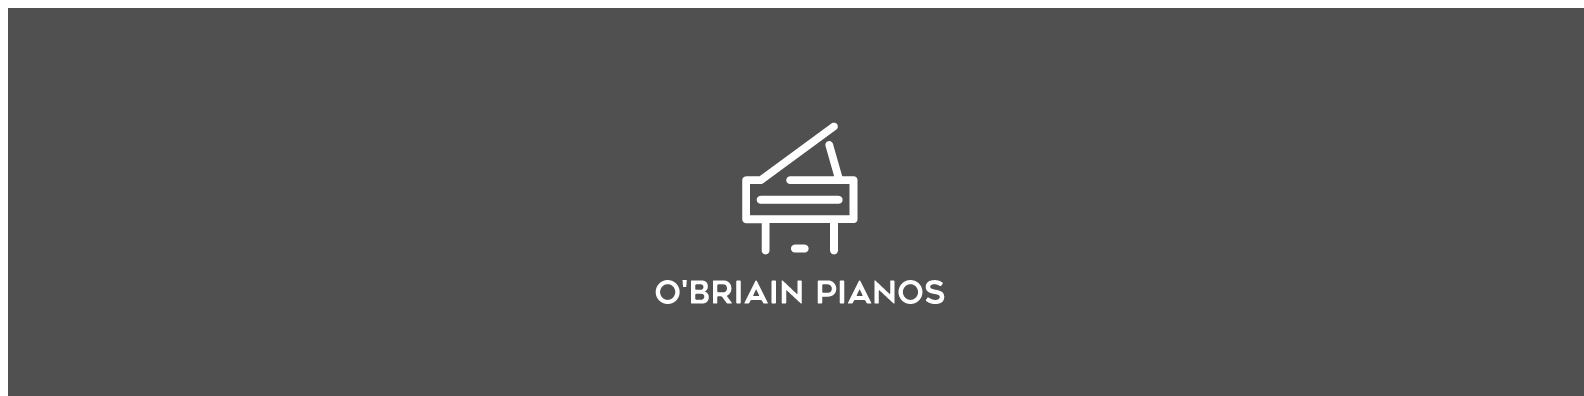 Bechstein Arts & Crafts-O'Briain Pianos